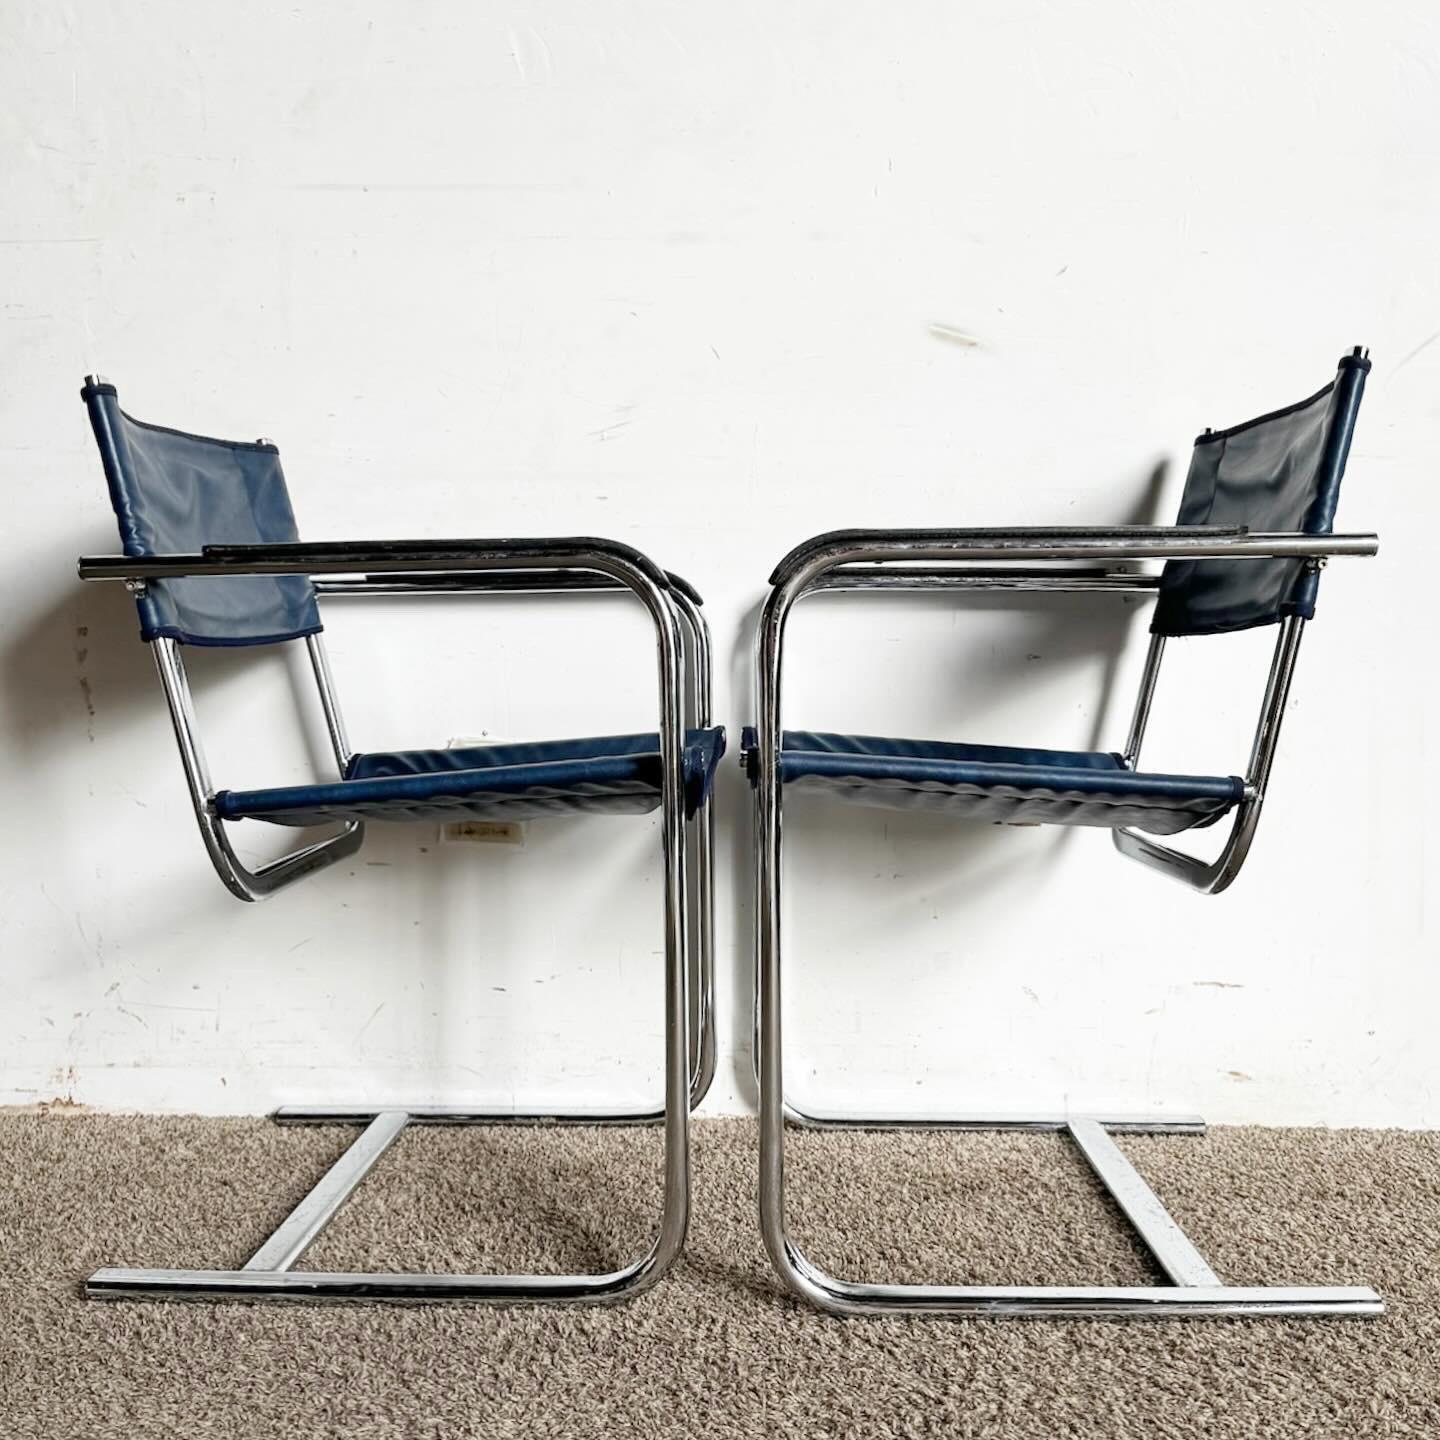 Élevez votre salle à manger avec les chaises de salle à manger cantilever en cuir bleu chromé. Ces chaises modernes allient le cuir bleu à des cadres chromés pour un look sophistiqué, idéal pour les maisons élégantes.
Quelques traces d'usure du cuir